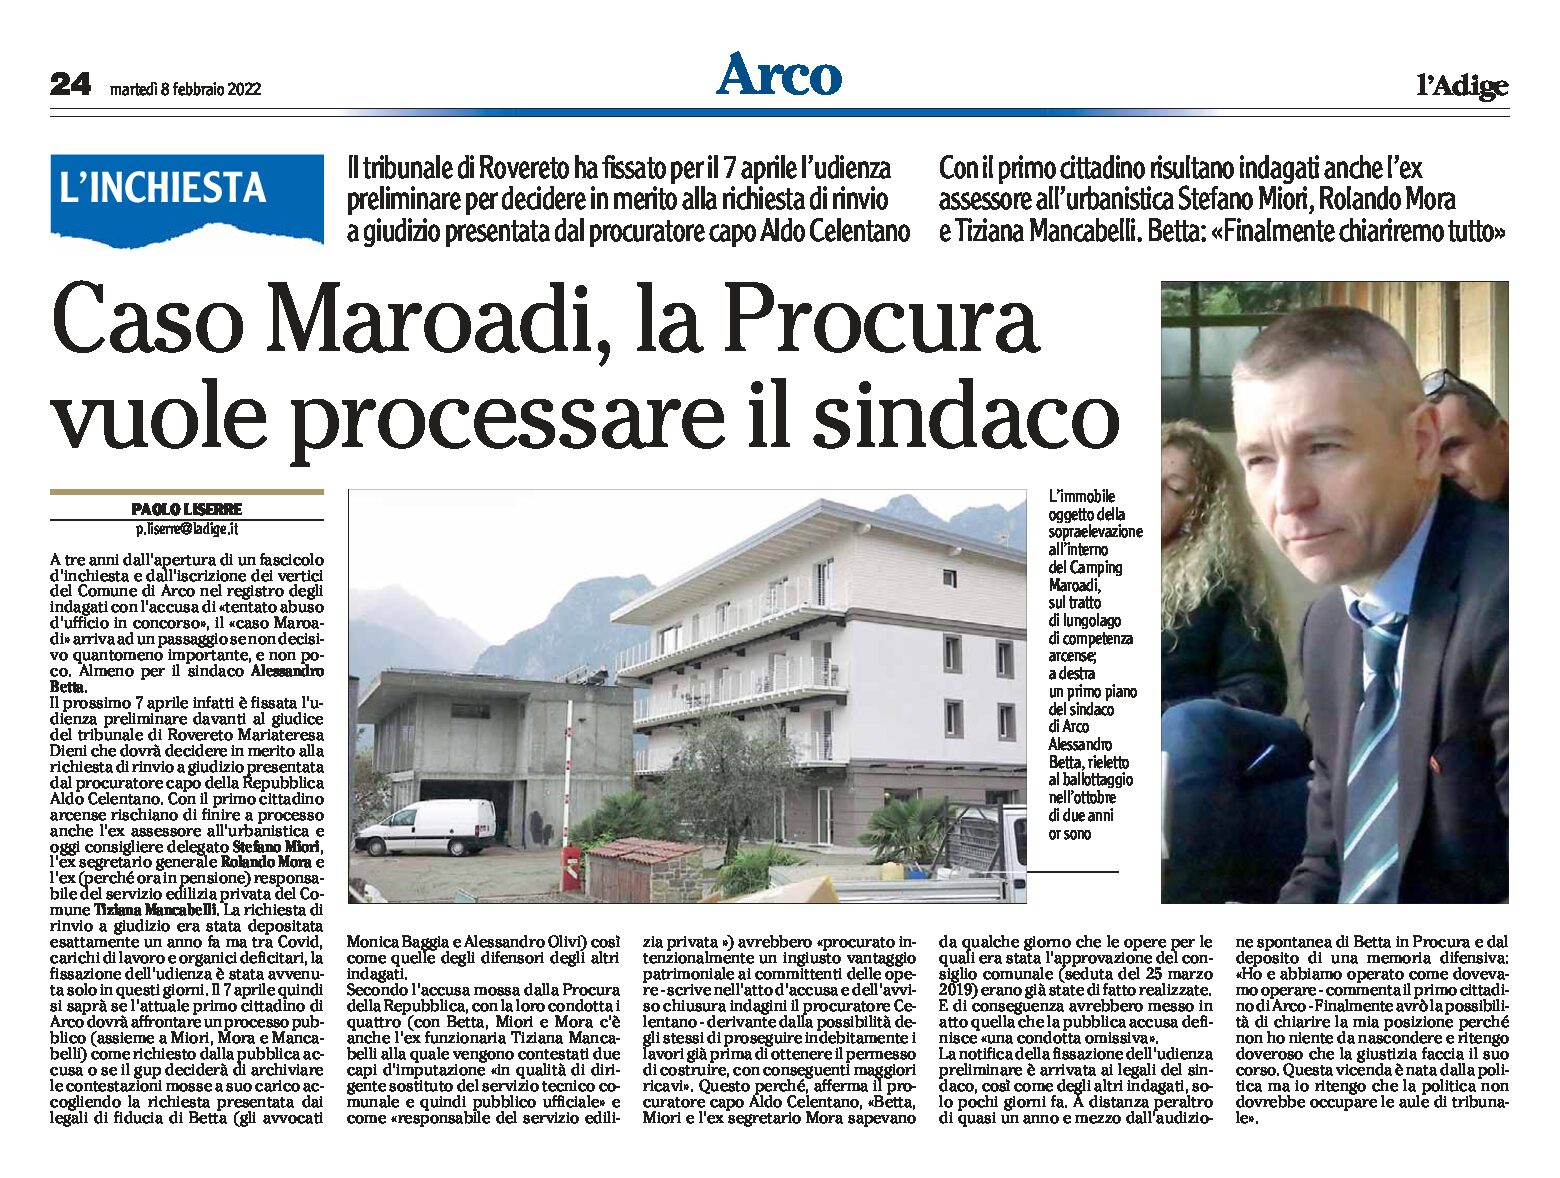 Arco: caso Maroadi, la Procura vuole processare il sindaco